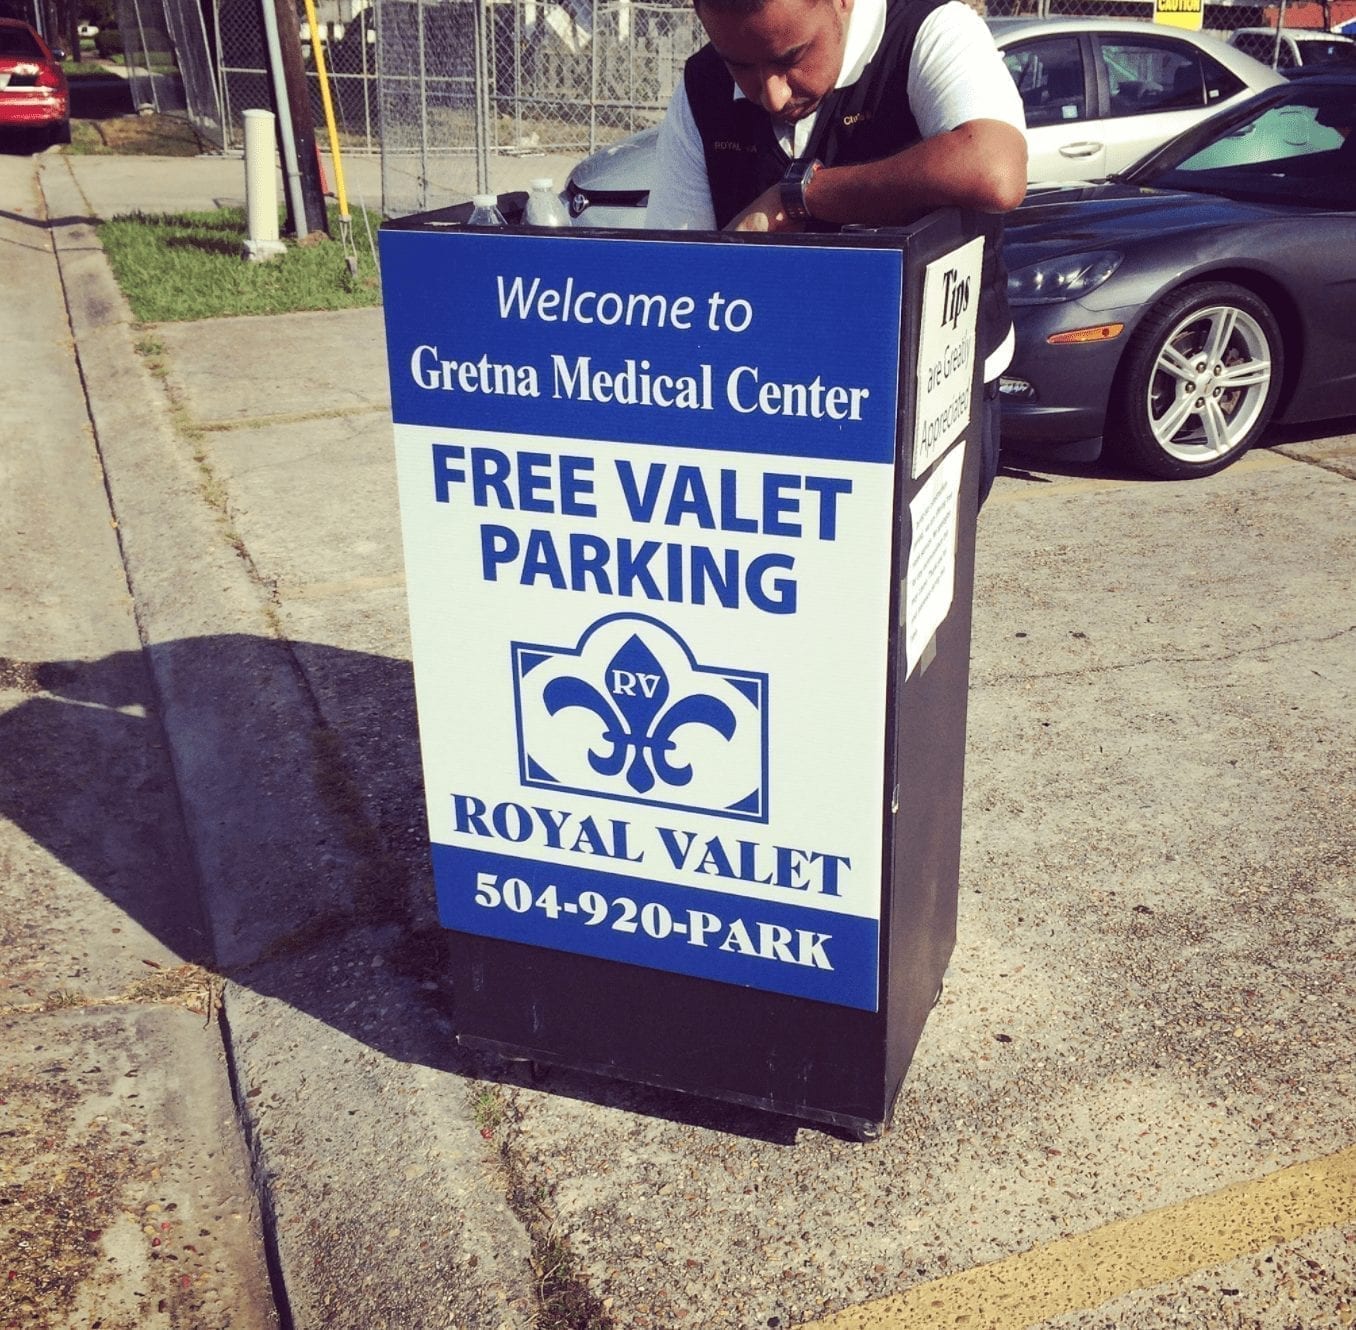 Royal Valet Standard Valet Podium in front of Medical Center